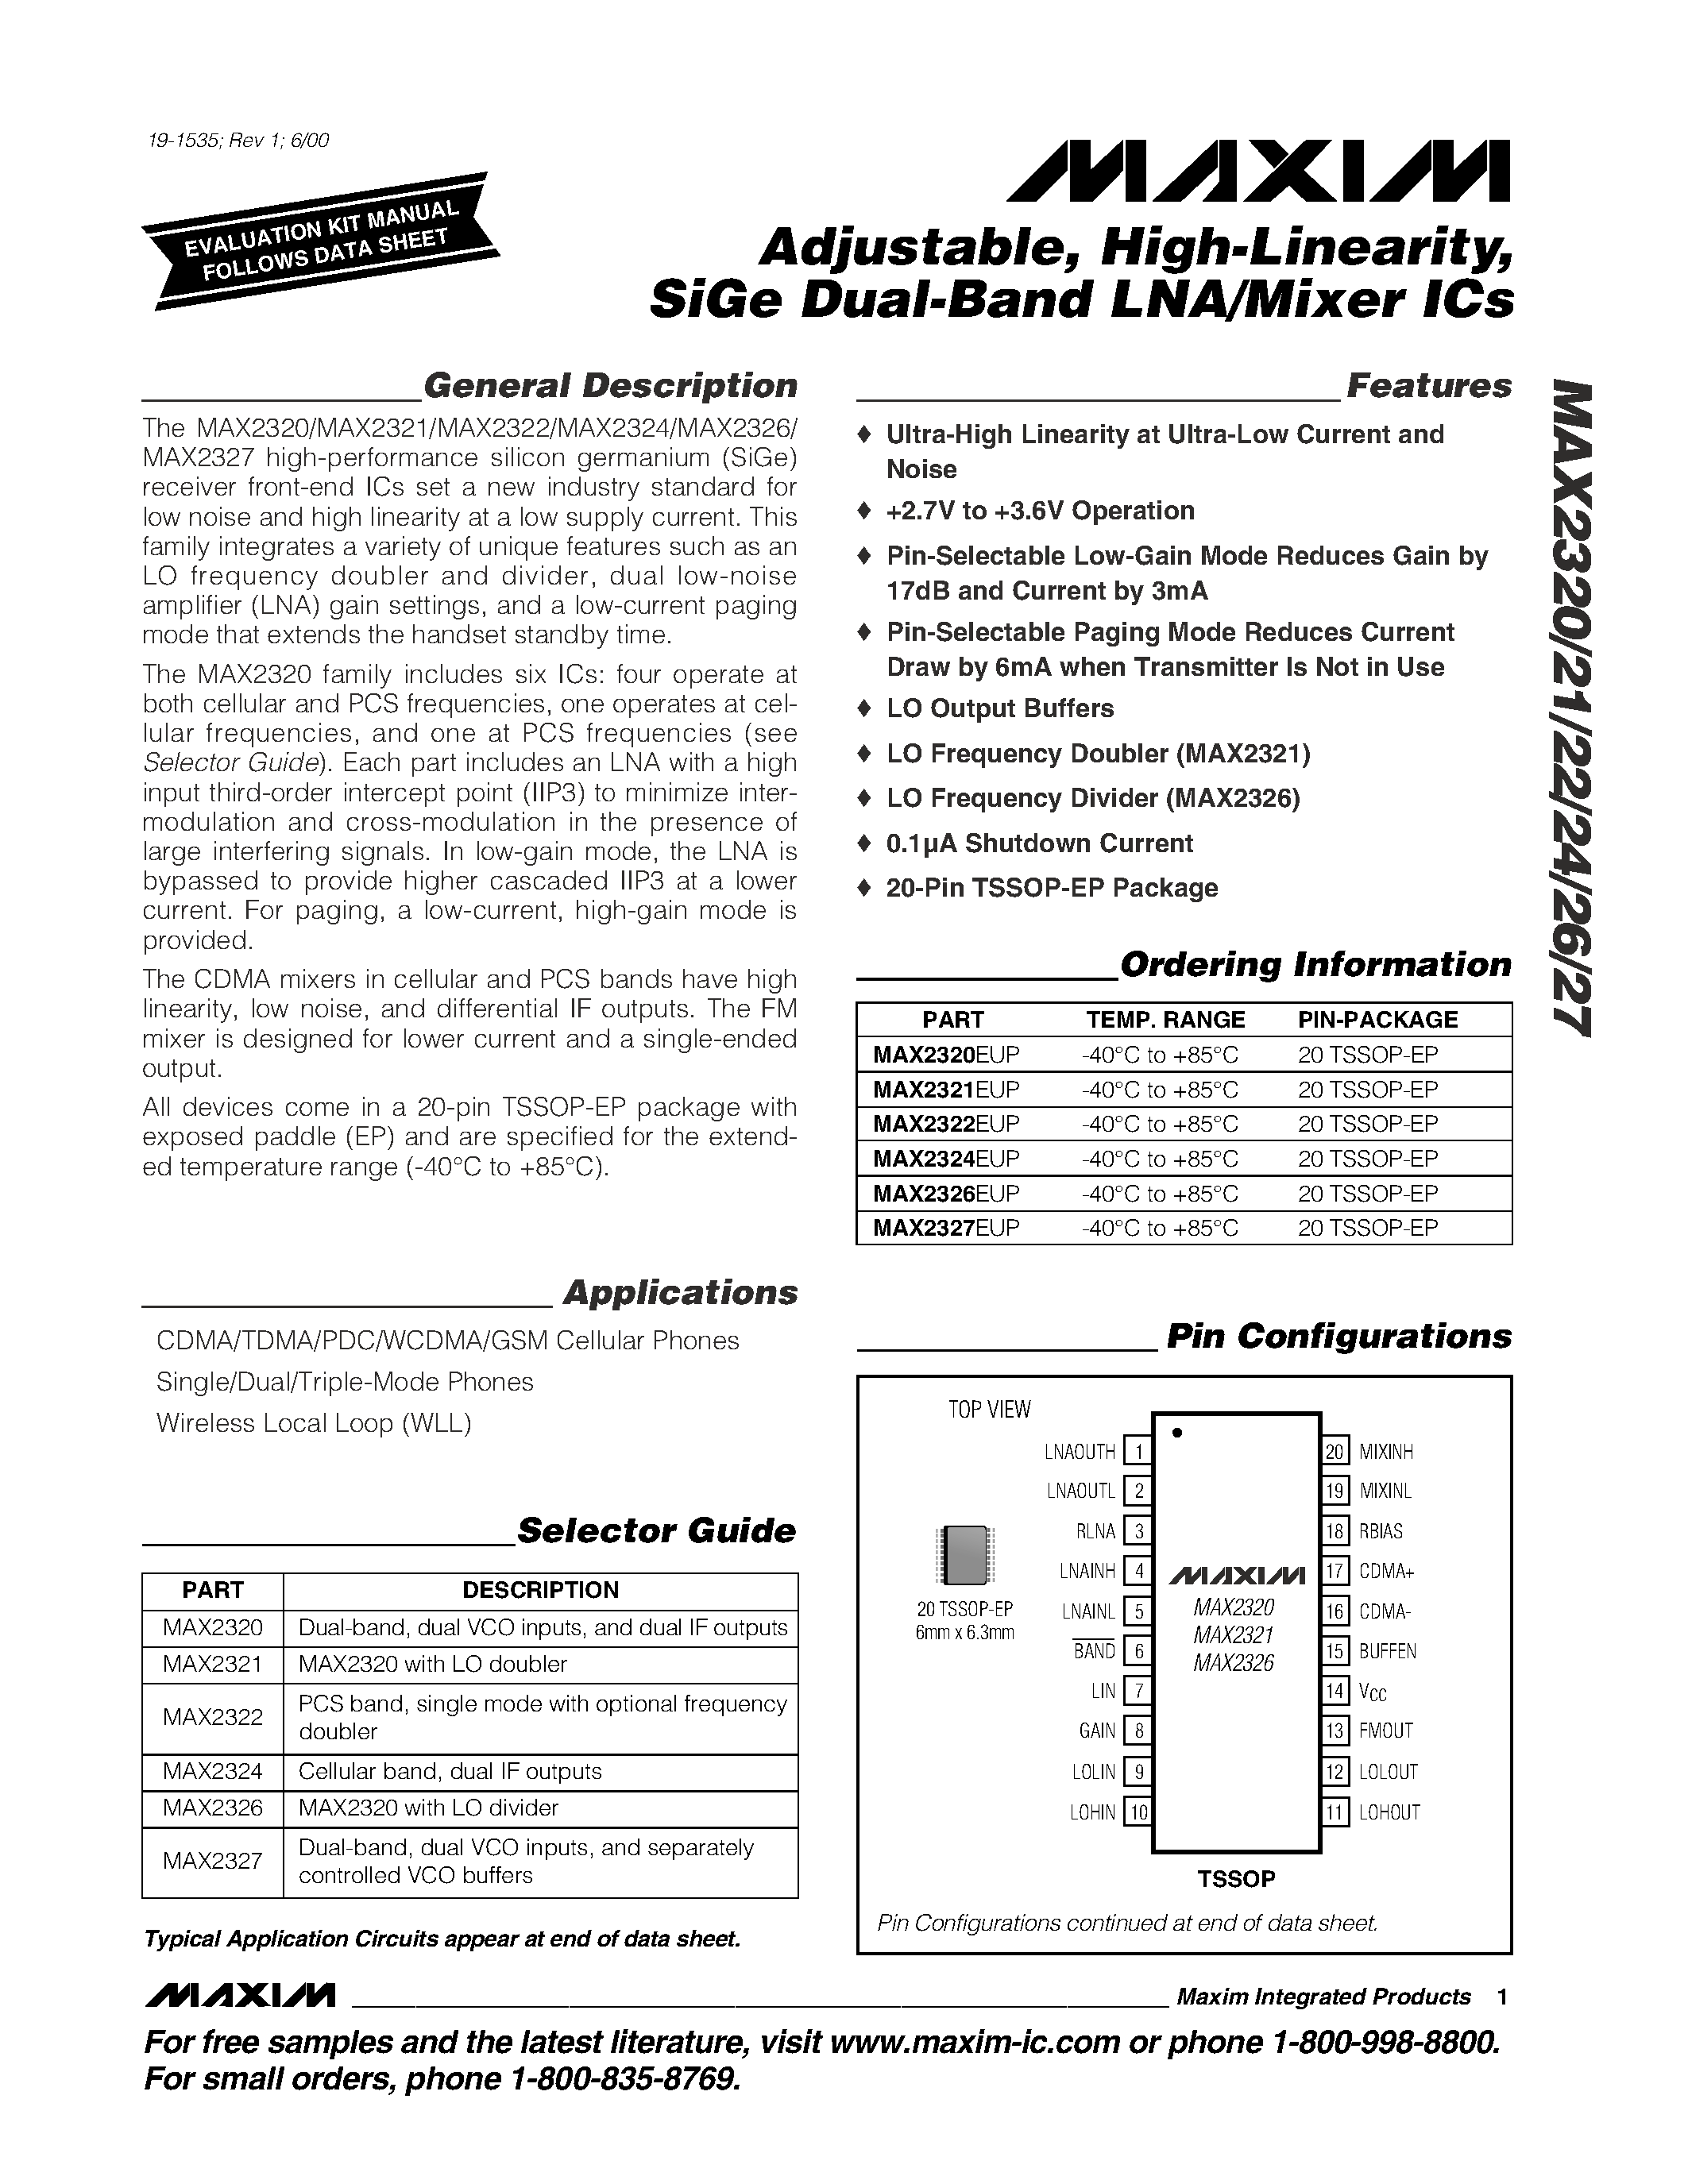 Даташит MAX2320EUP - Adjustable / High-Linearity / SiGe Dual-Band LNA/Mixer ICs страница 1